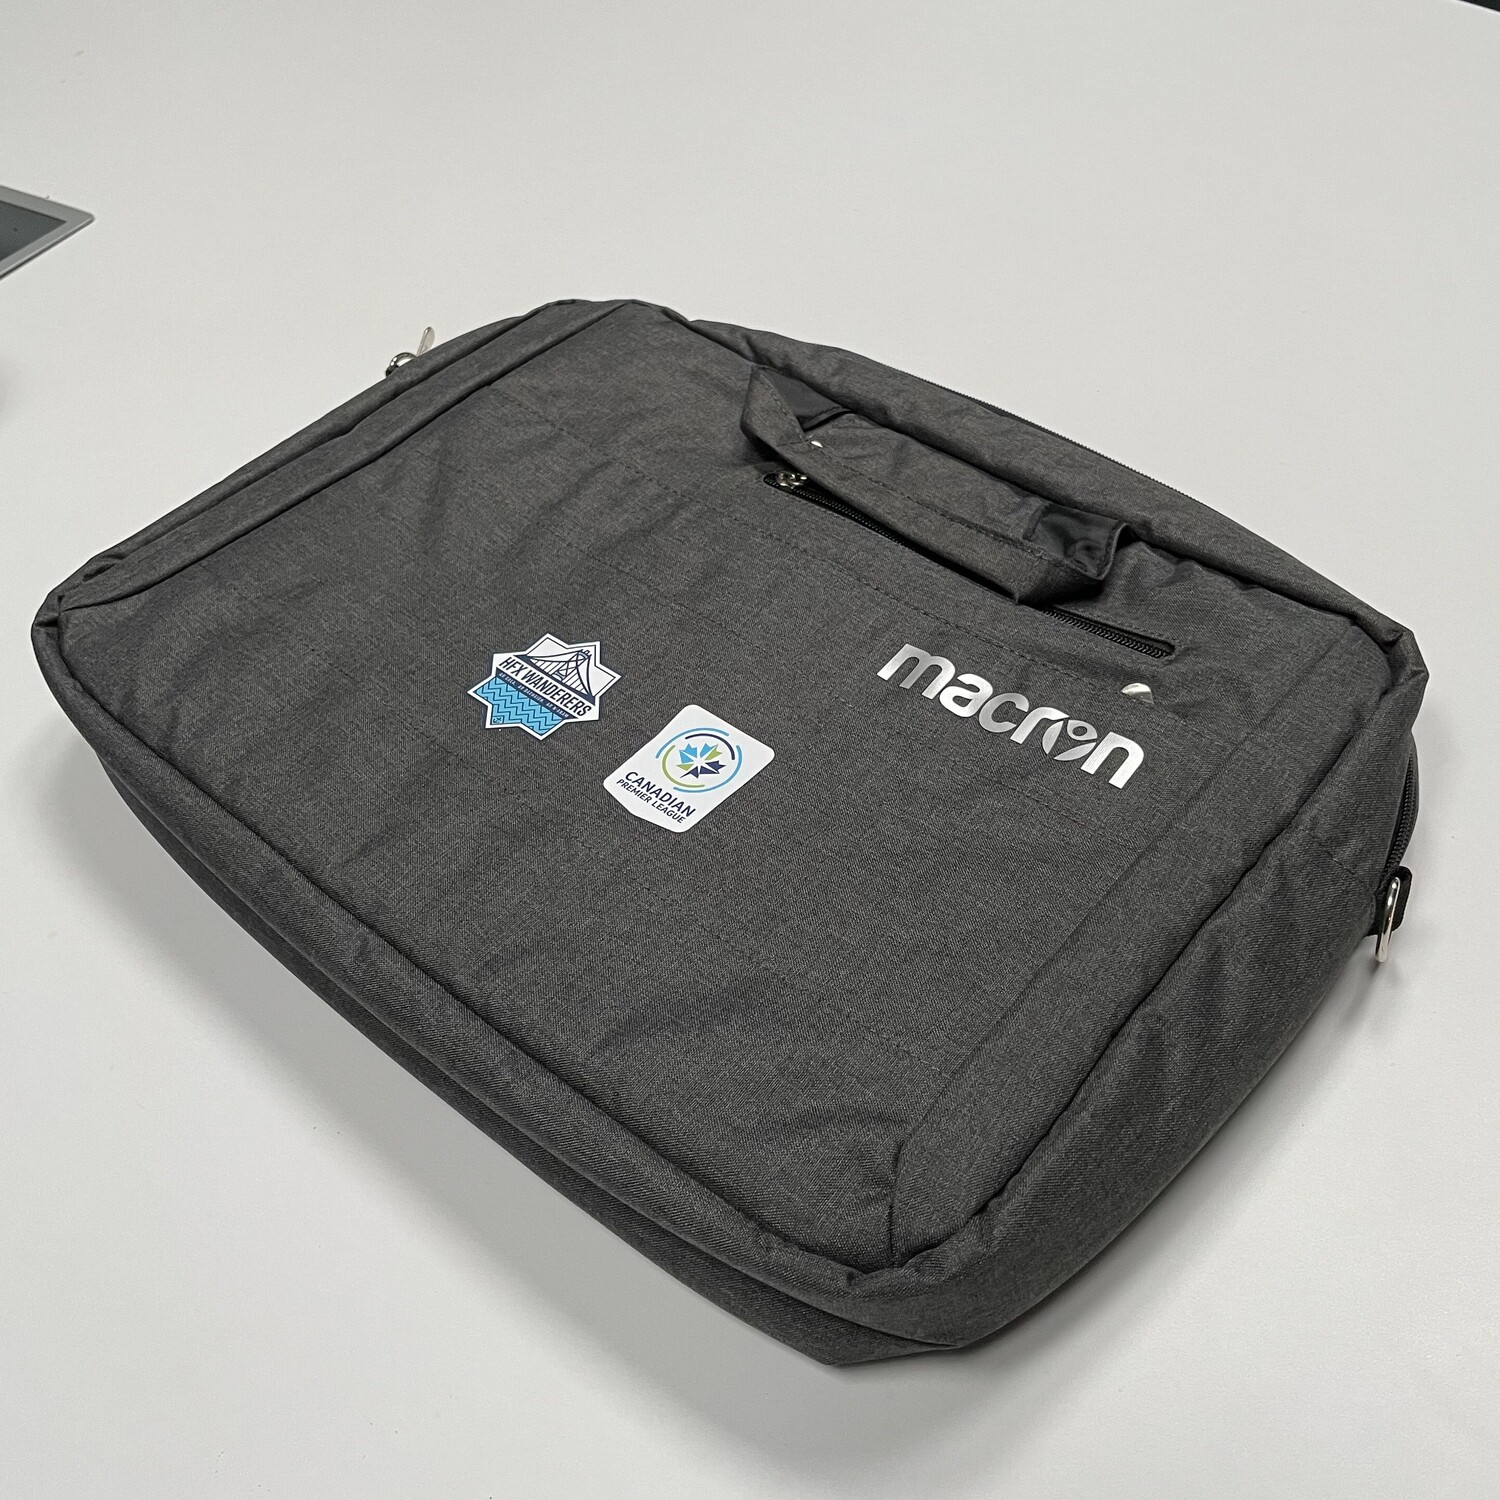 Macron Laptop Bag